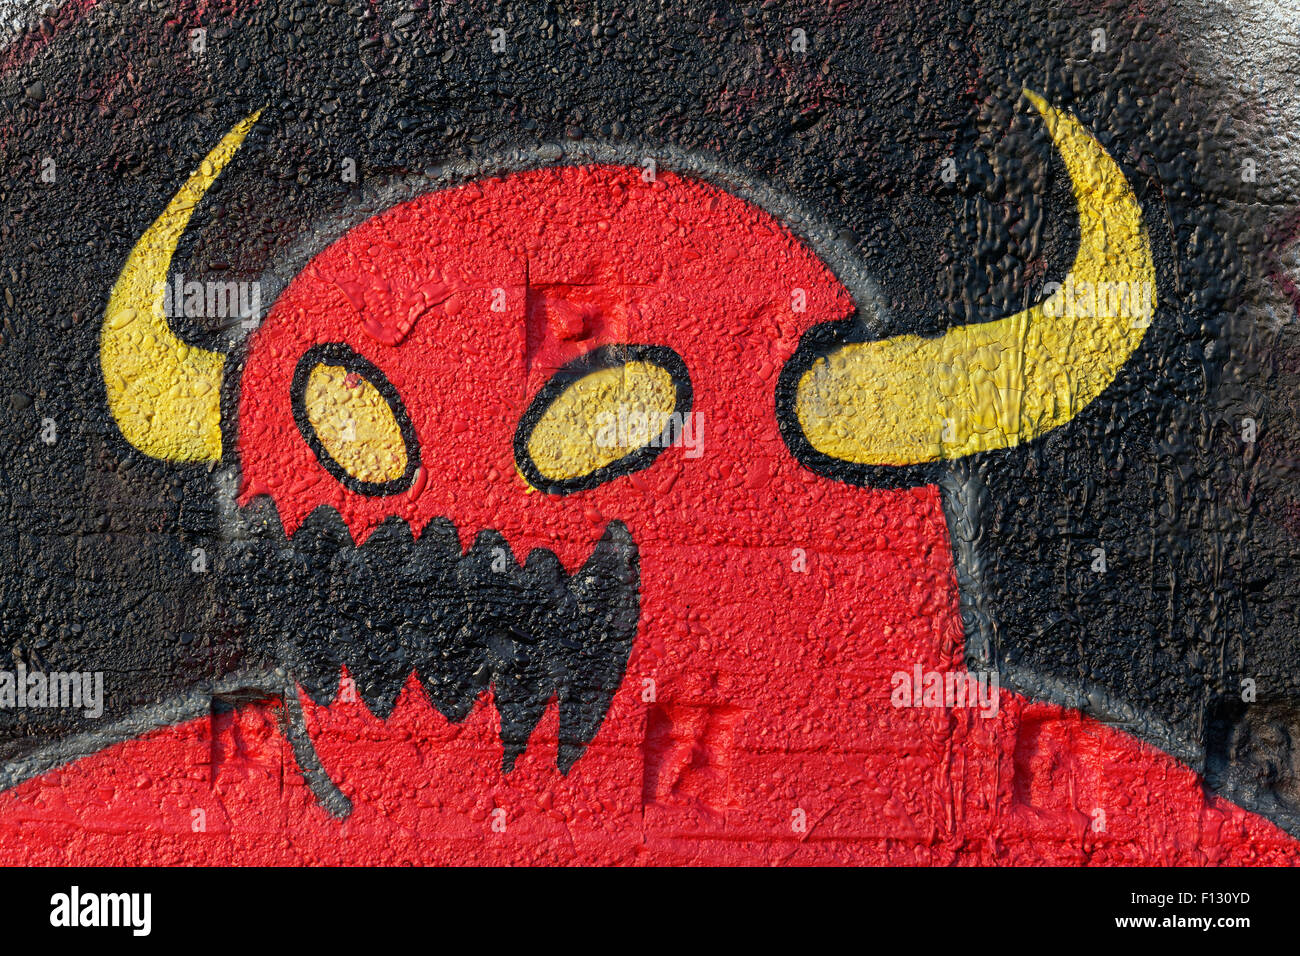 Rote Monster mit gelben Hörner, Fantasiefigur, Graffiti, street-Art, Duisburg, Nordrhein-Westfalen, Deutschland Stockfoto